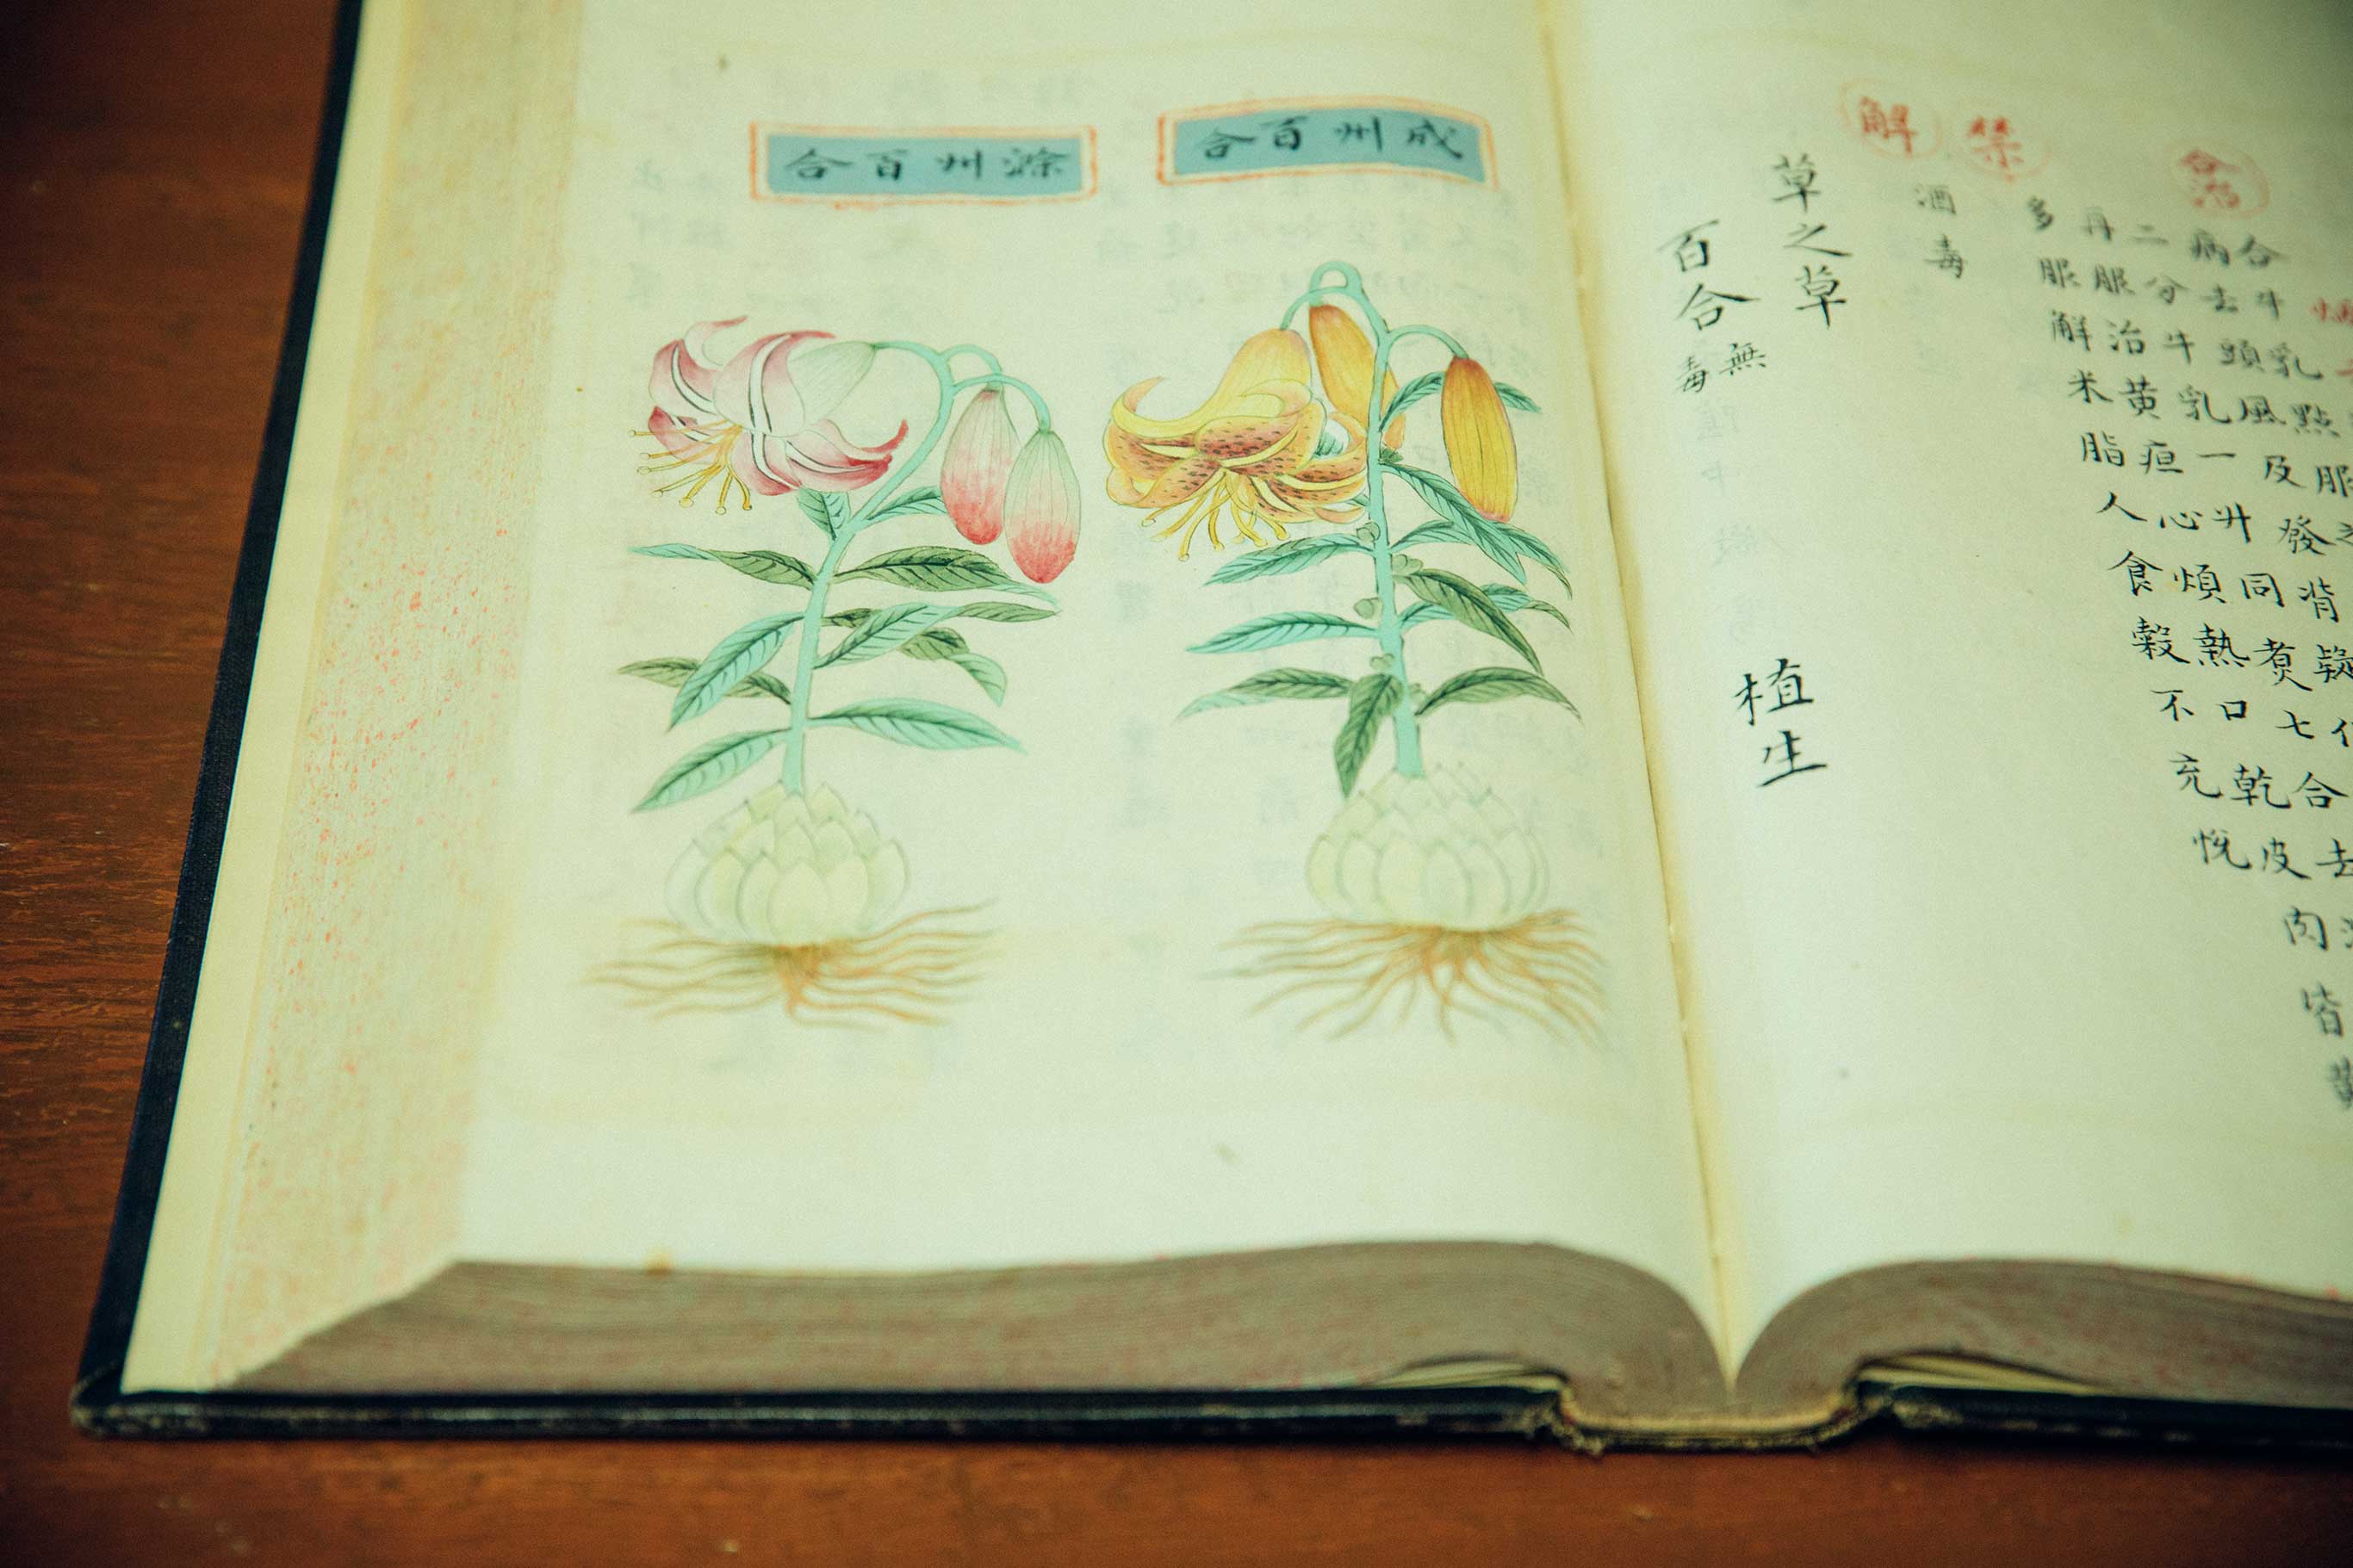 大塚医院の蔵書には貴重なものが多い。これは2代目の大塚恭男医師が入手した中国・明朝の生薬の本。すべて手書きで美しい。百合の根は漢方として使用されている。